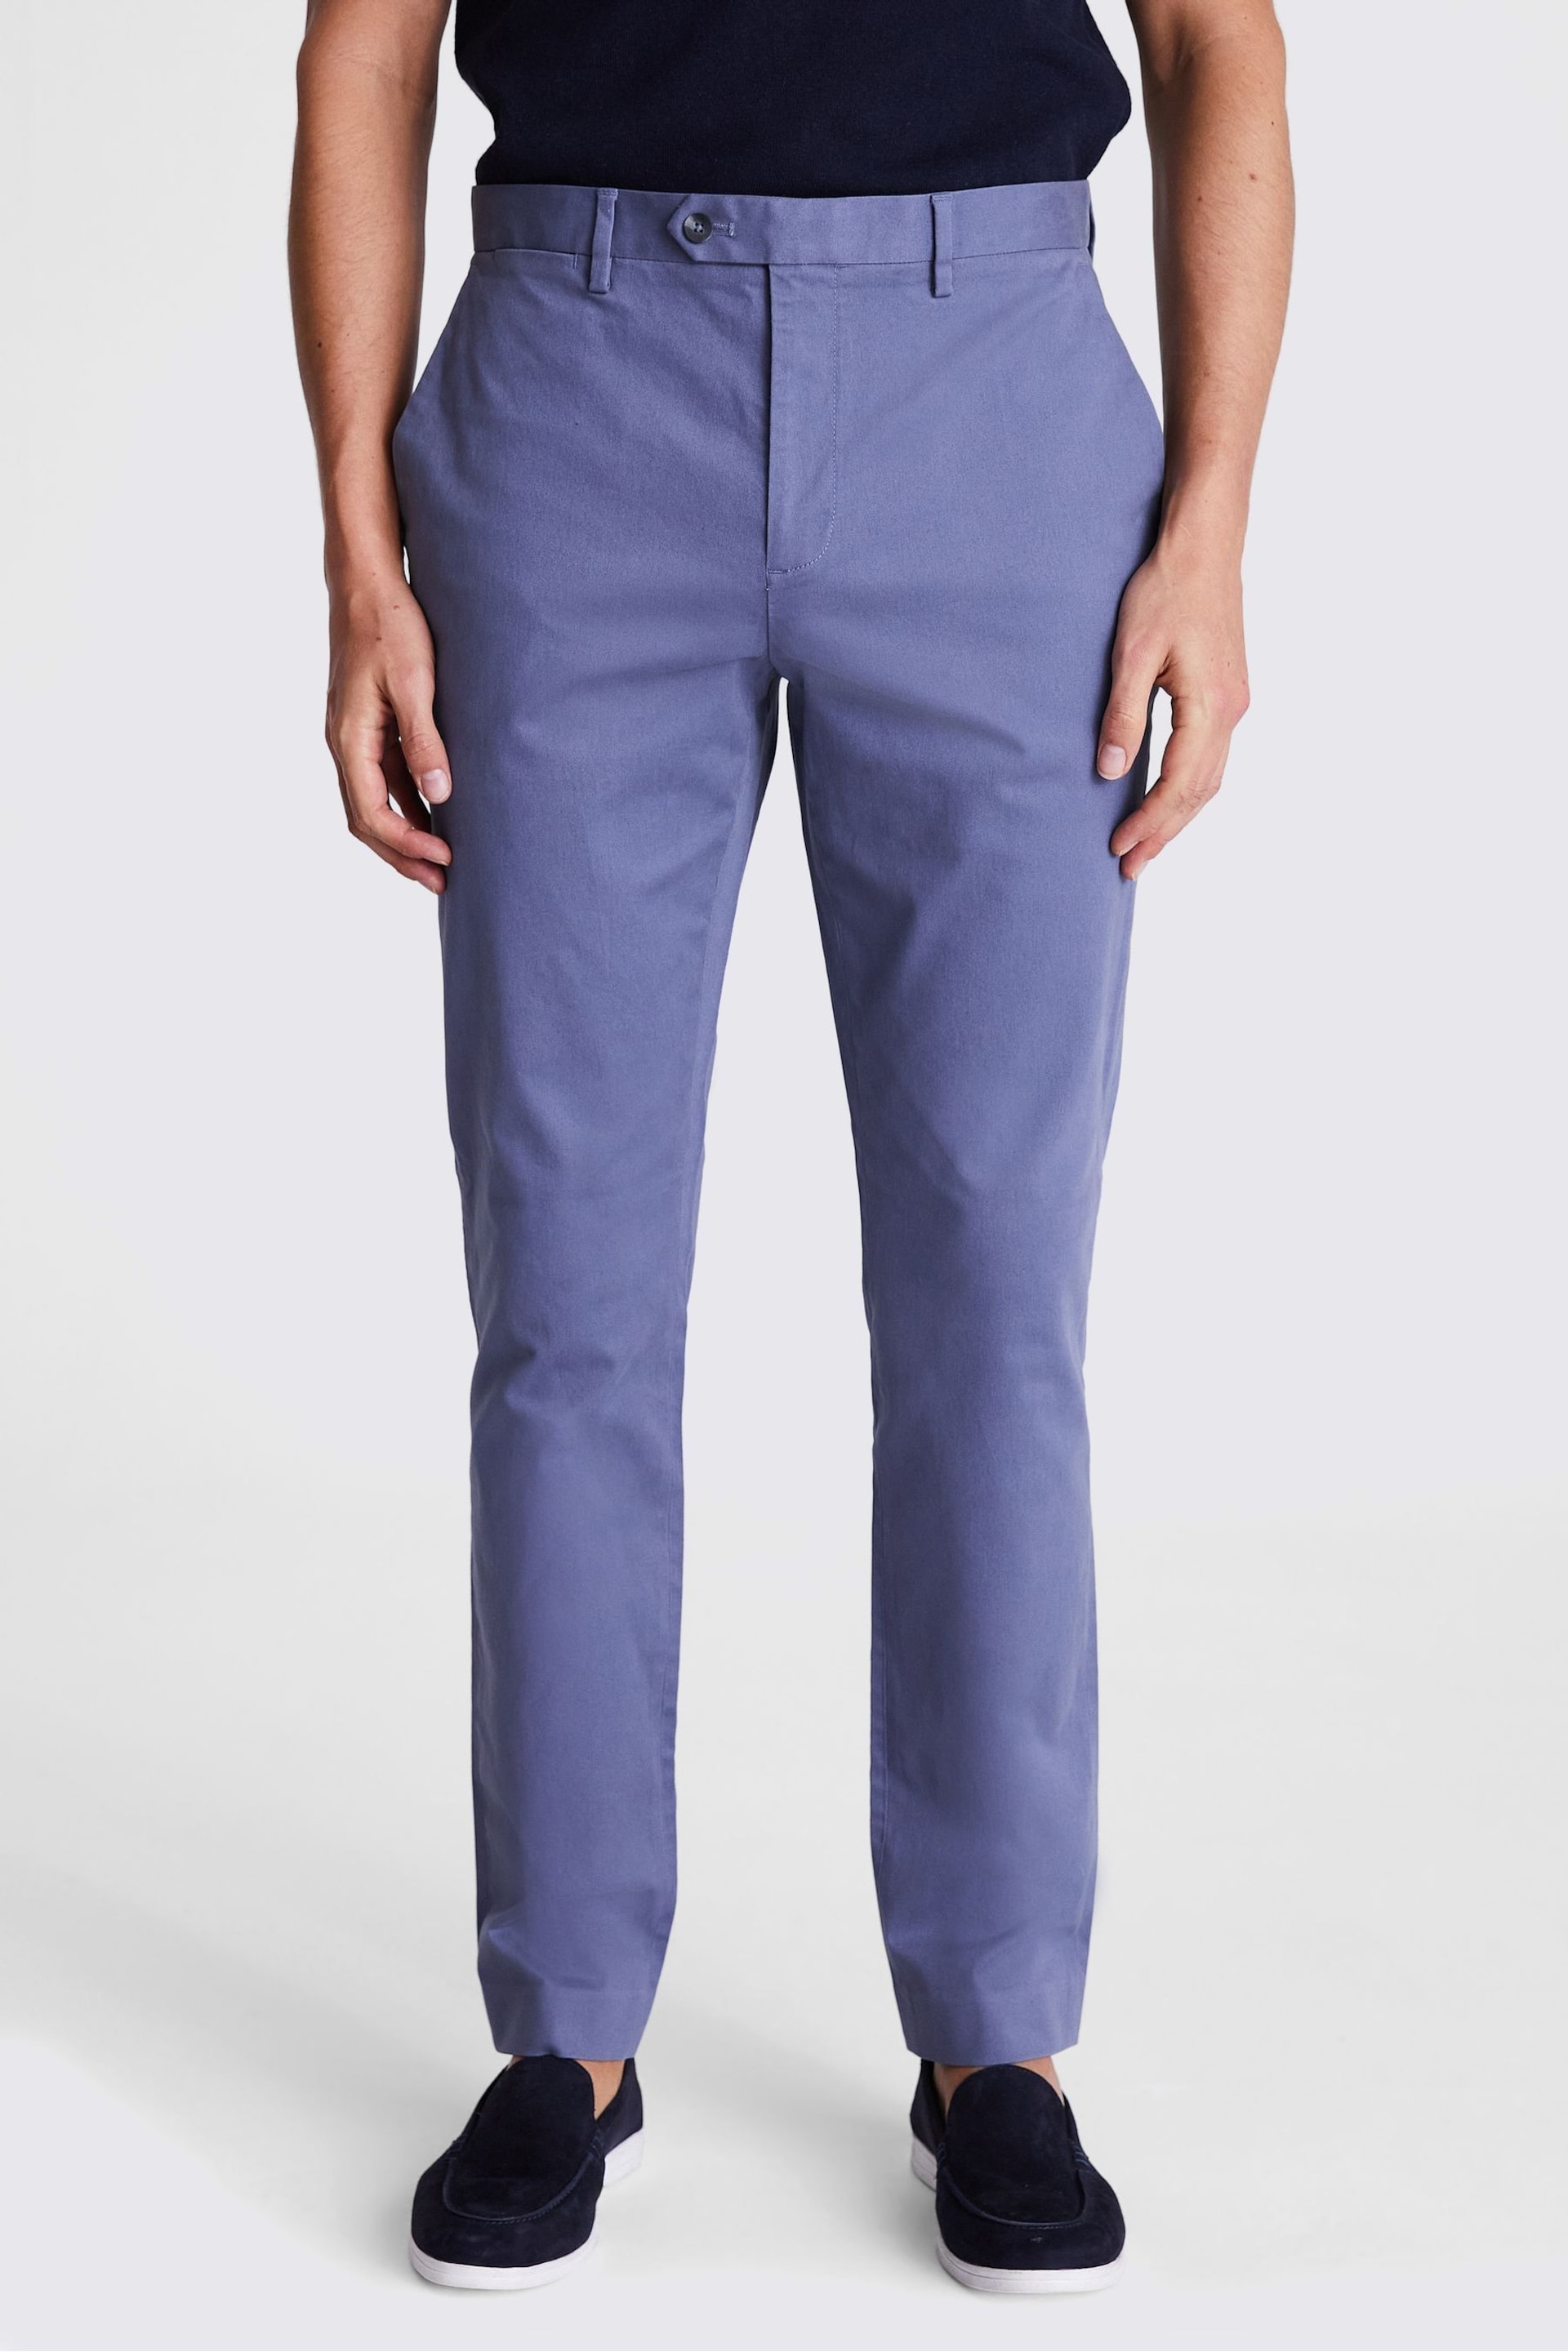 MOSS Dark Blue Slim Chino Trousers - Image 1 of 3